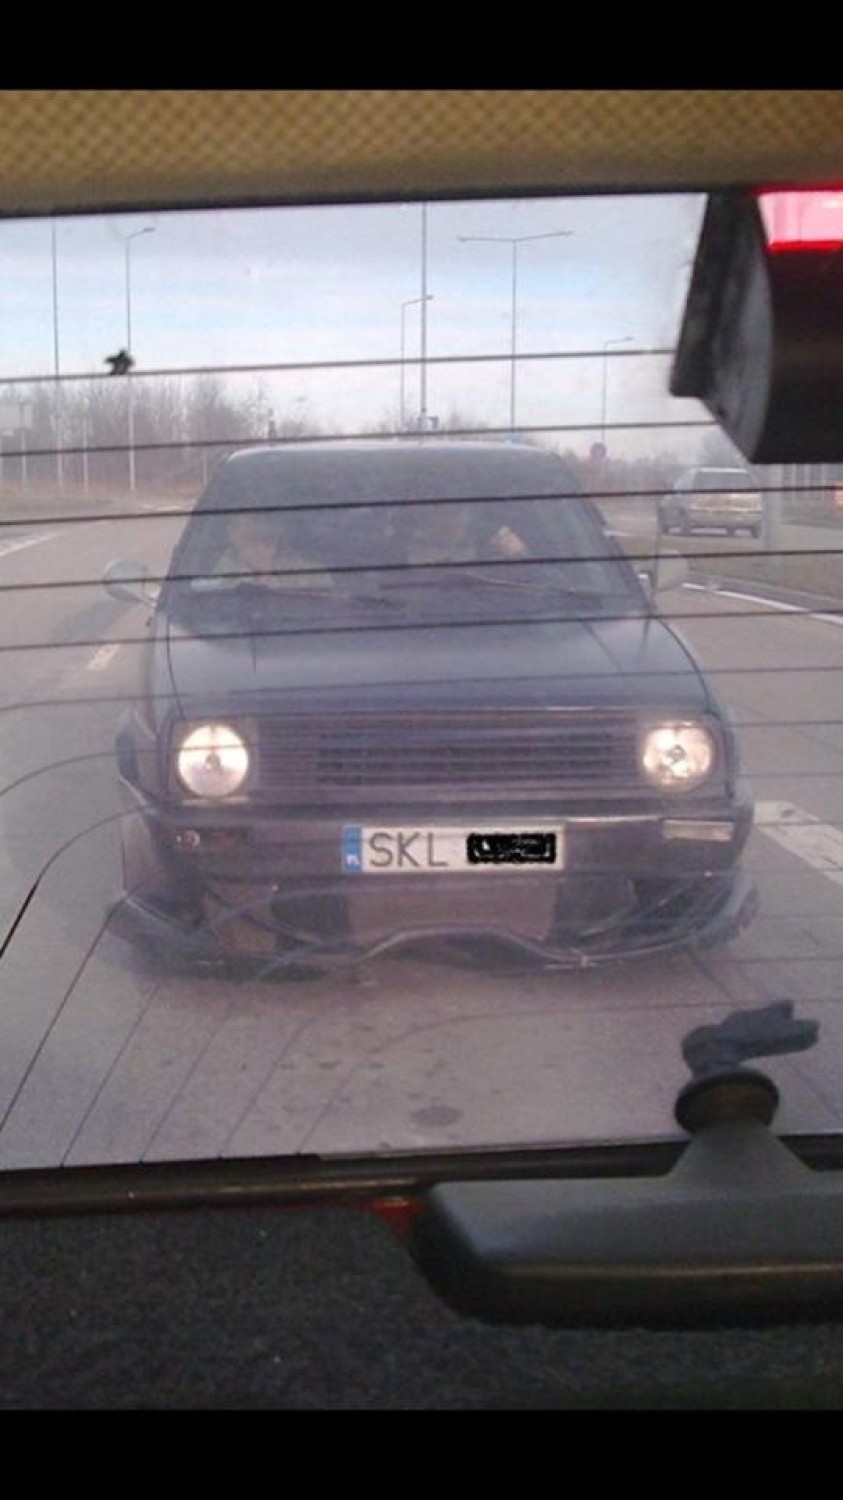 Obraźliwa strona "J*bać SKL" na Facebooku. W Częstochowie nie lubią kierowców z Kłobucka? [ZDJĘCIA]